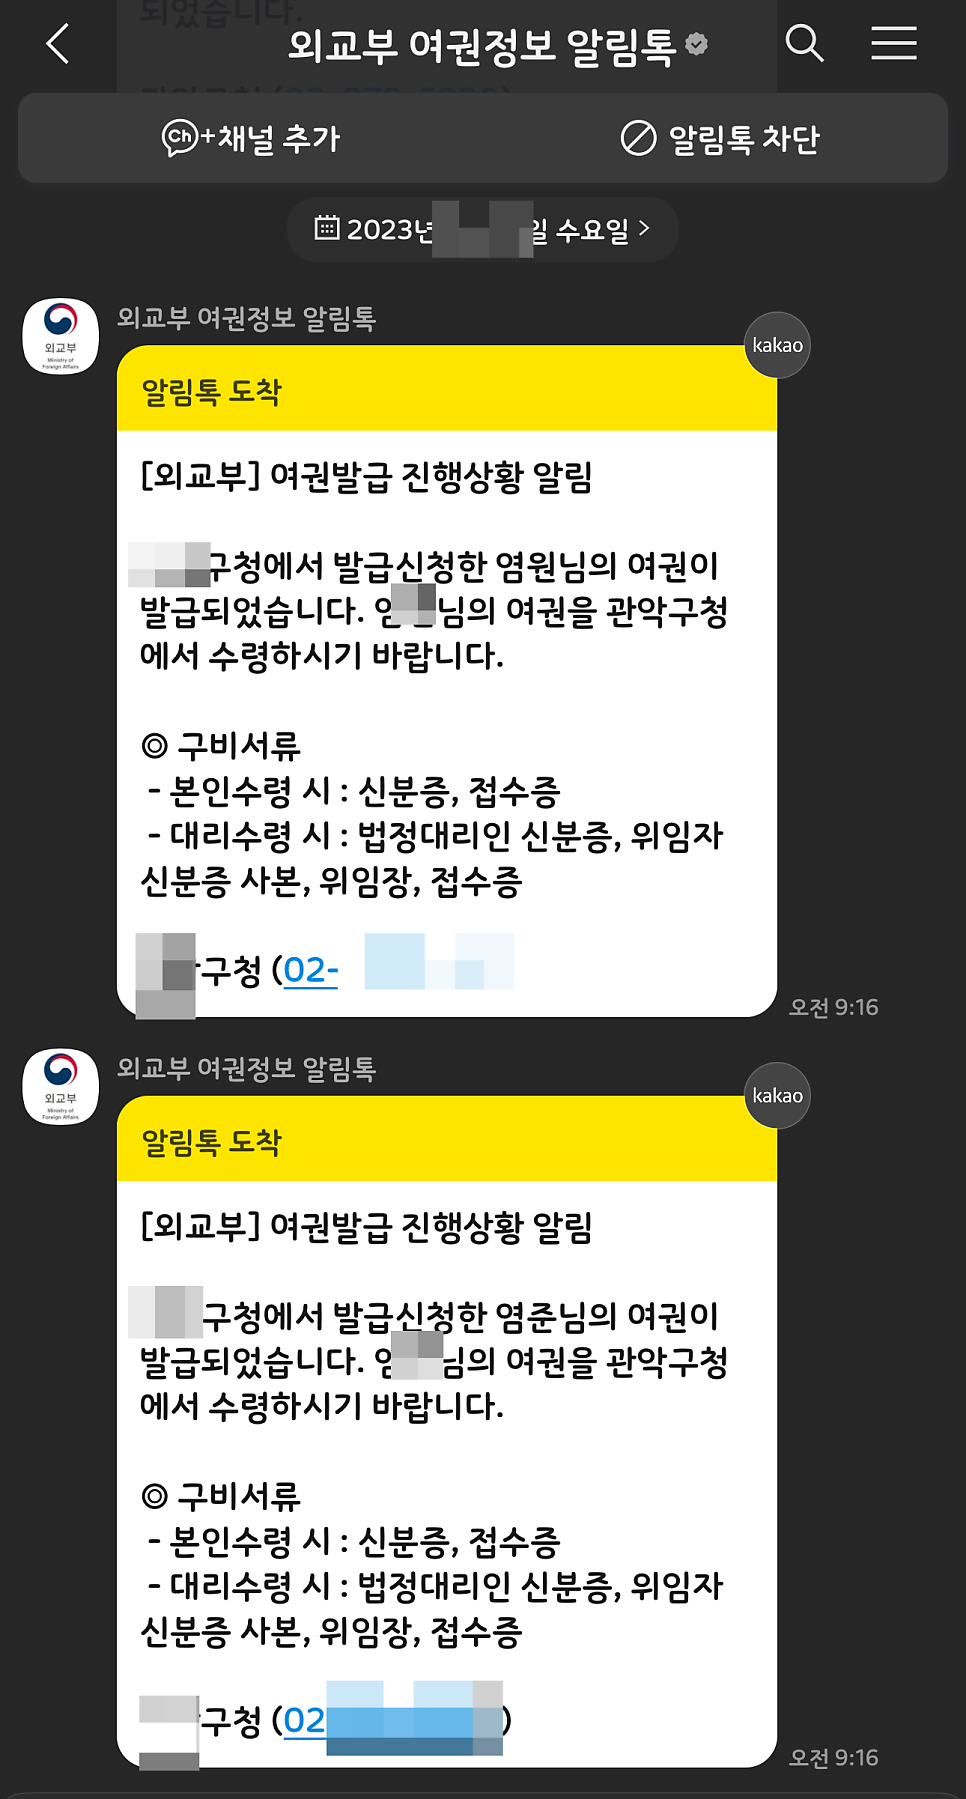 미성년자 여권 재발급 준비물 + 사진 1매 들고 부모 한명만 가면 됨 feat. 구여권 15,000원 ~!